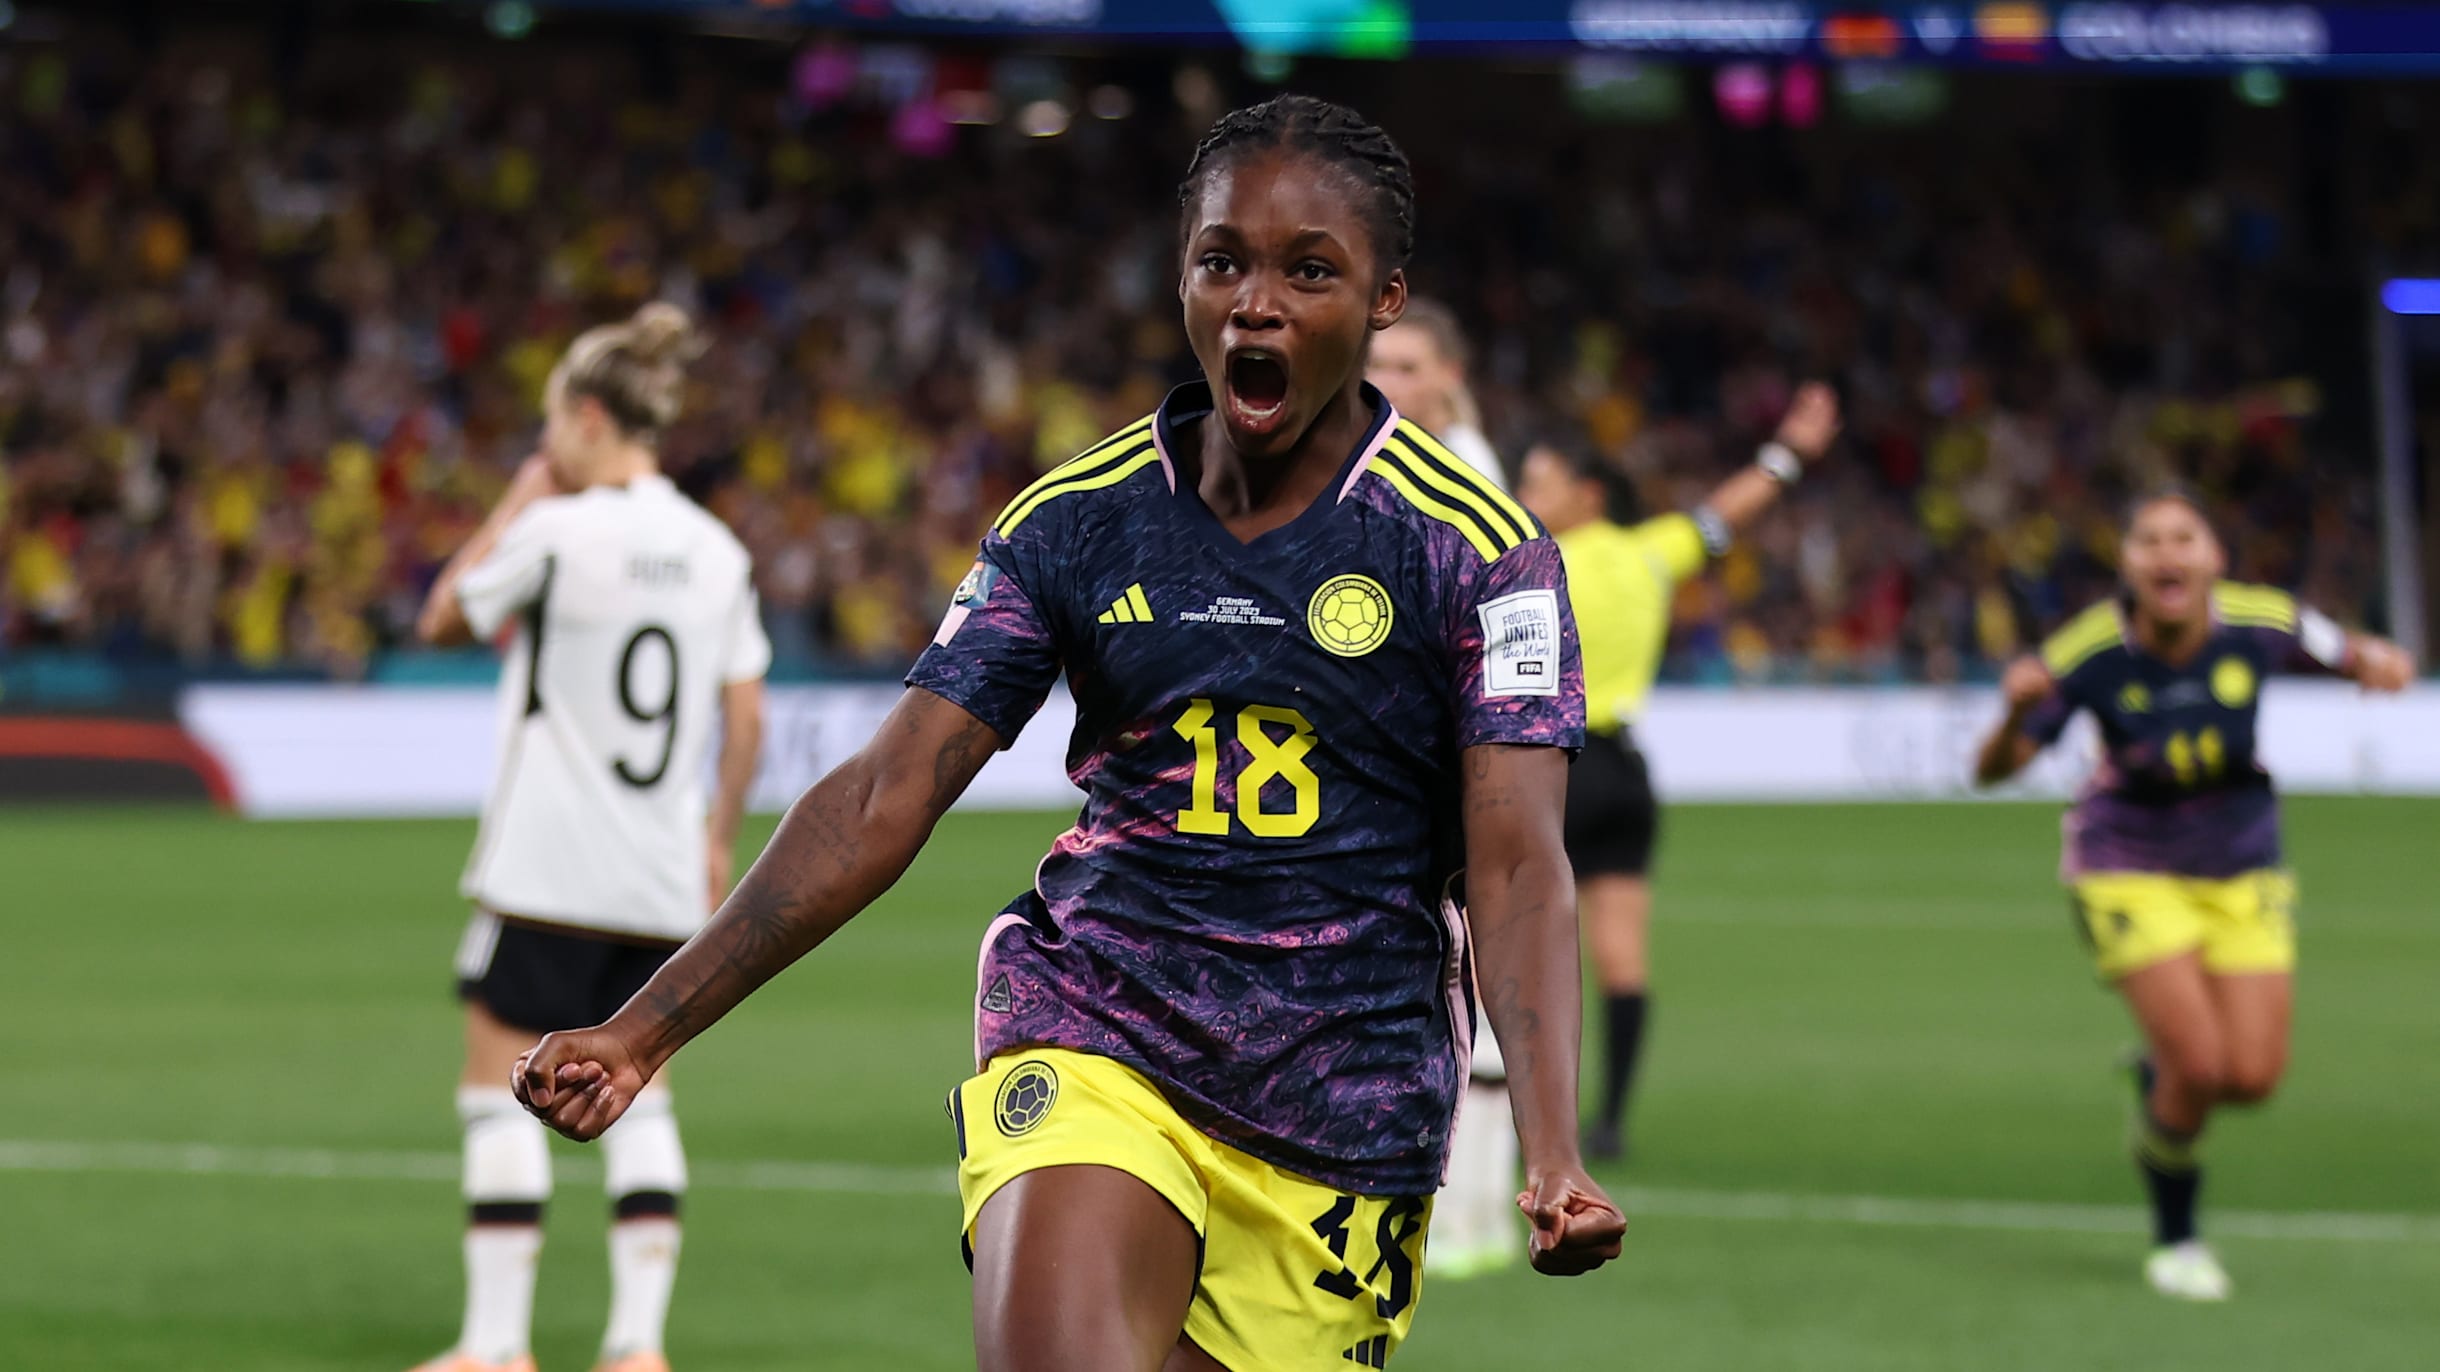 Espanha vence Colômbia e é bicampeã do Mundial Sub-17 Feminino, futebol  internacional